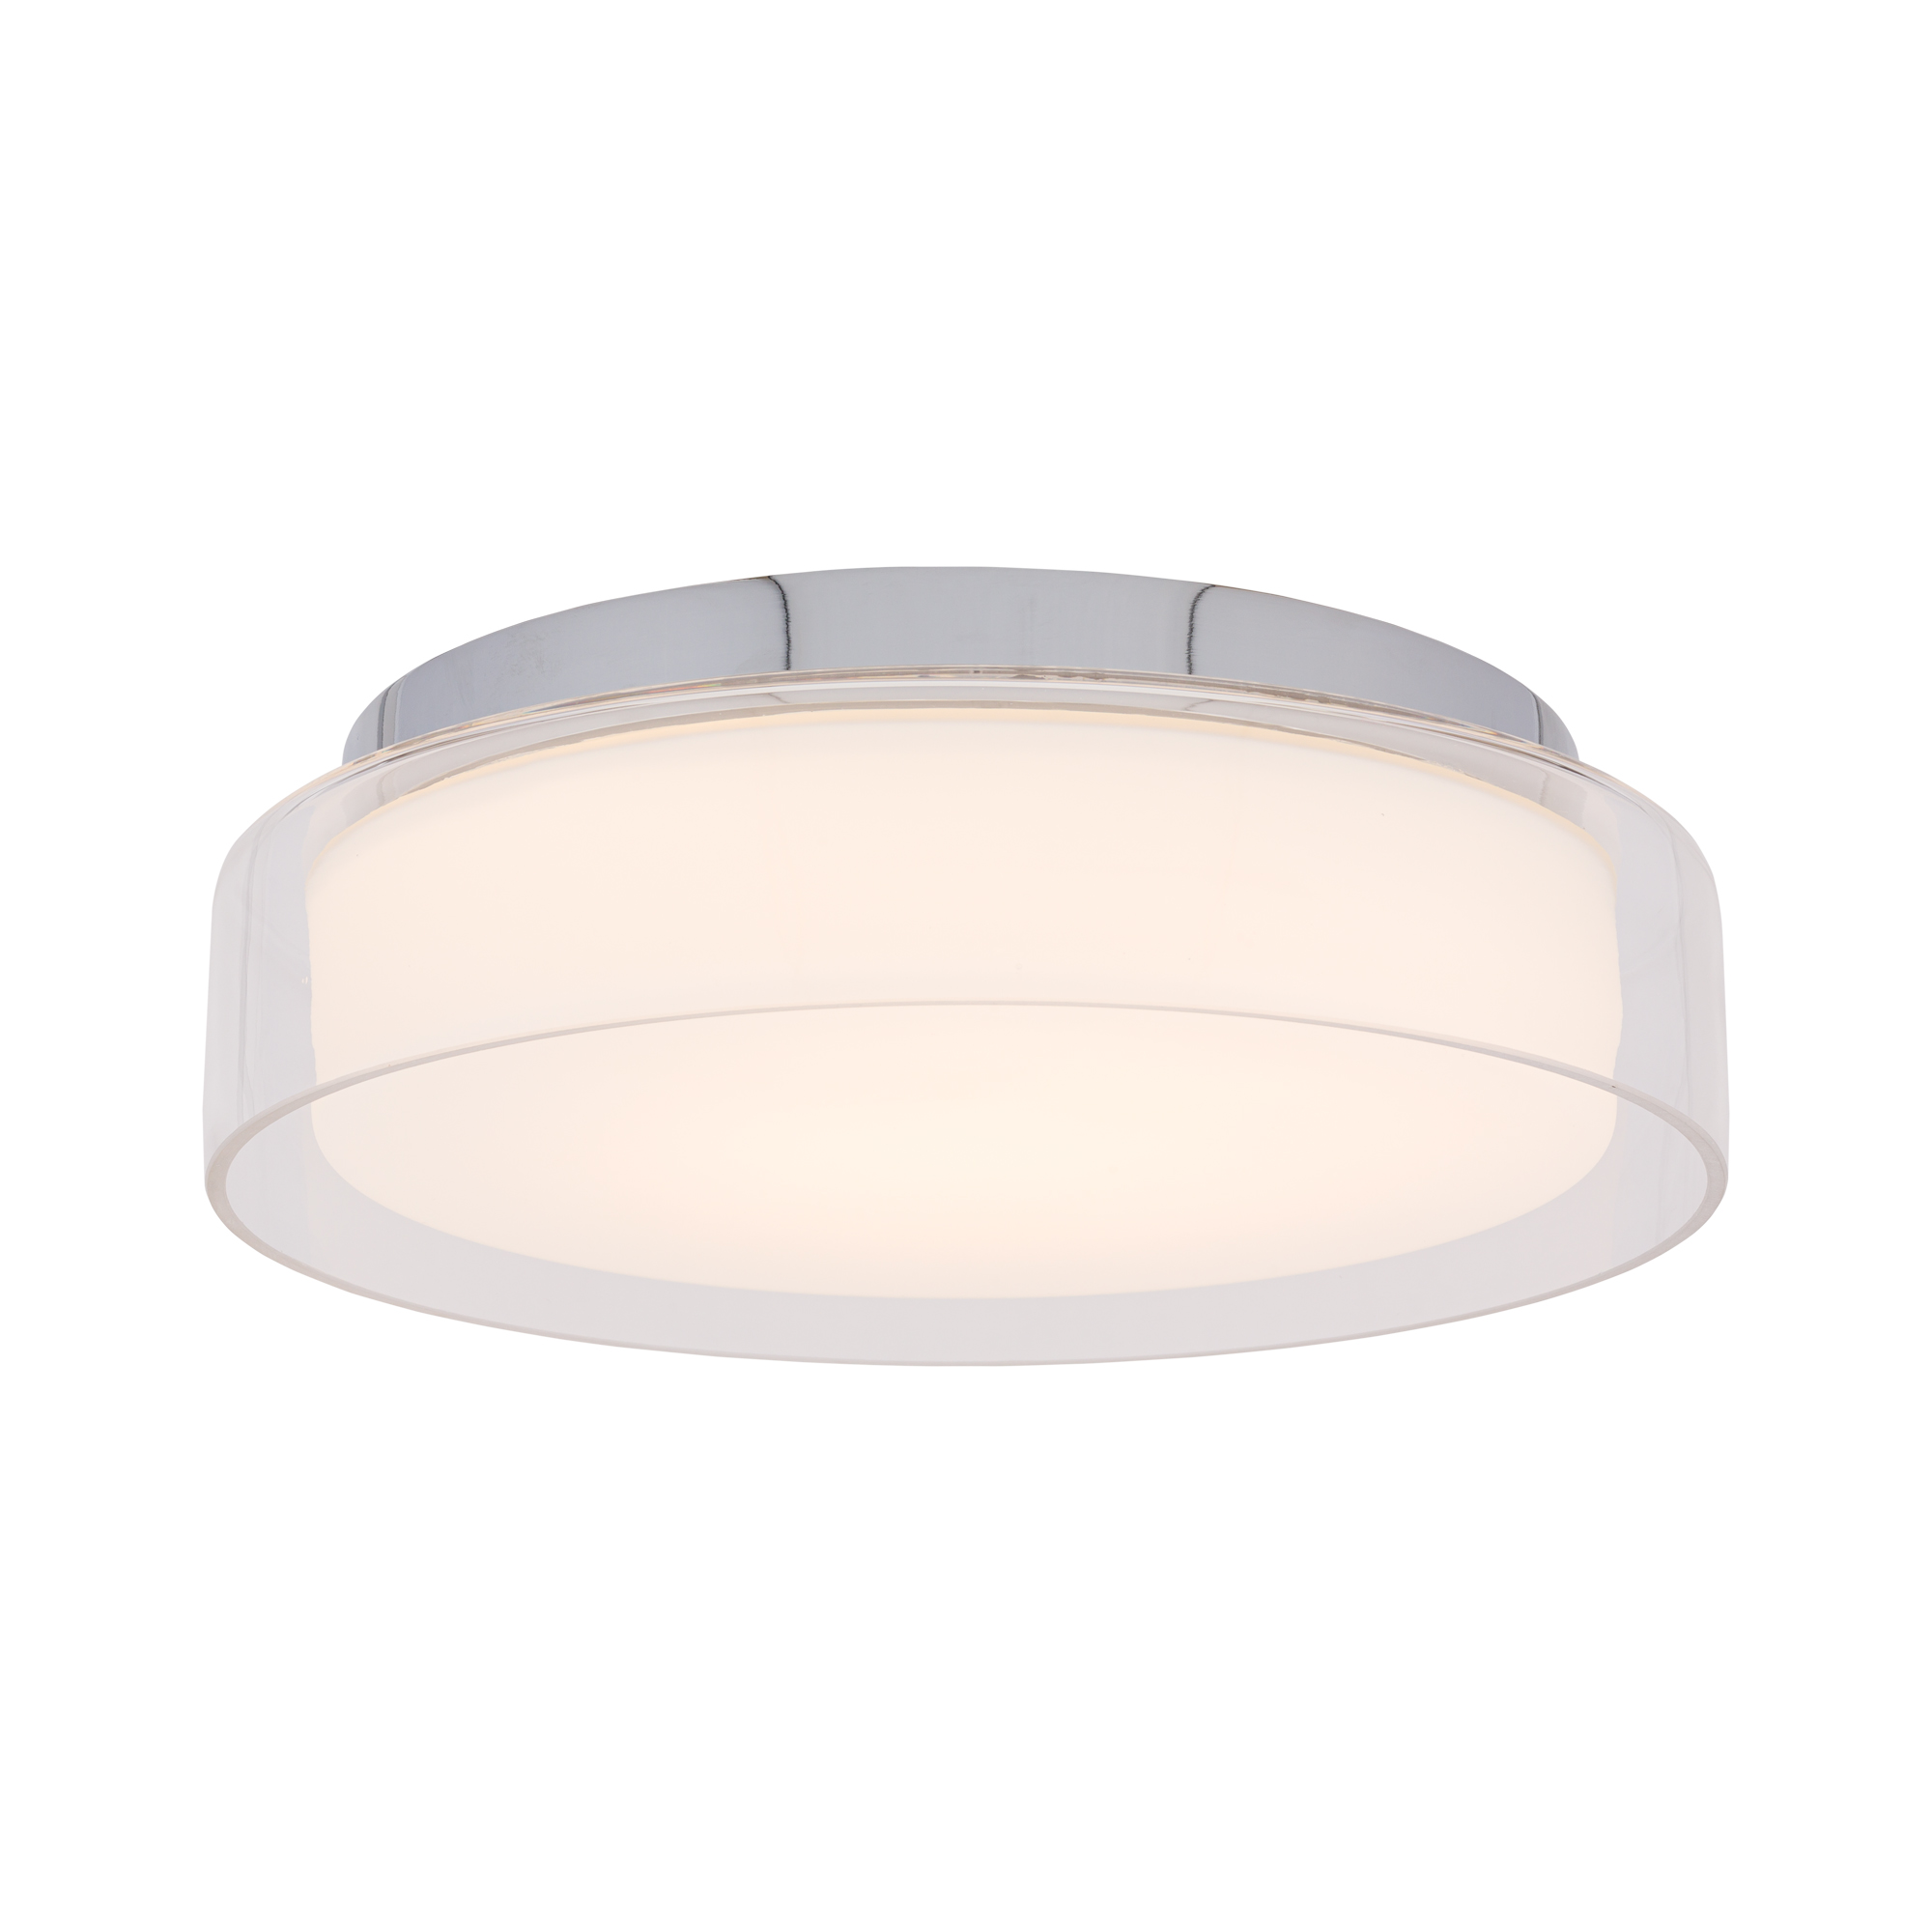 Lampa plafon PAN LED S LED IP44 kolor chrom Nowodvorski 8173